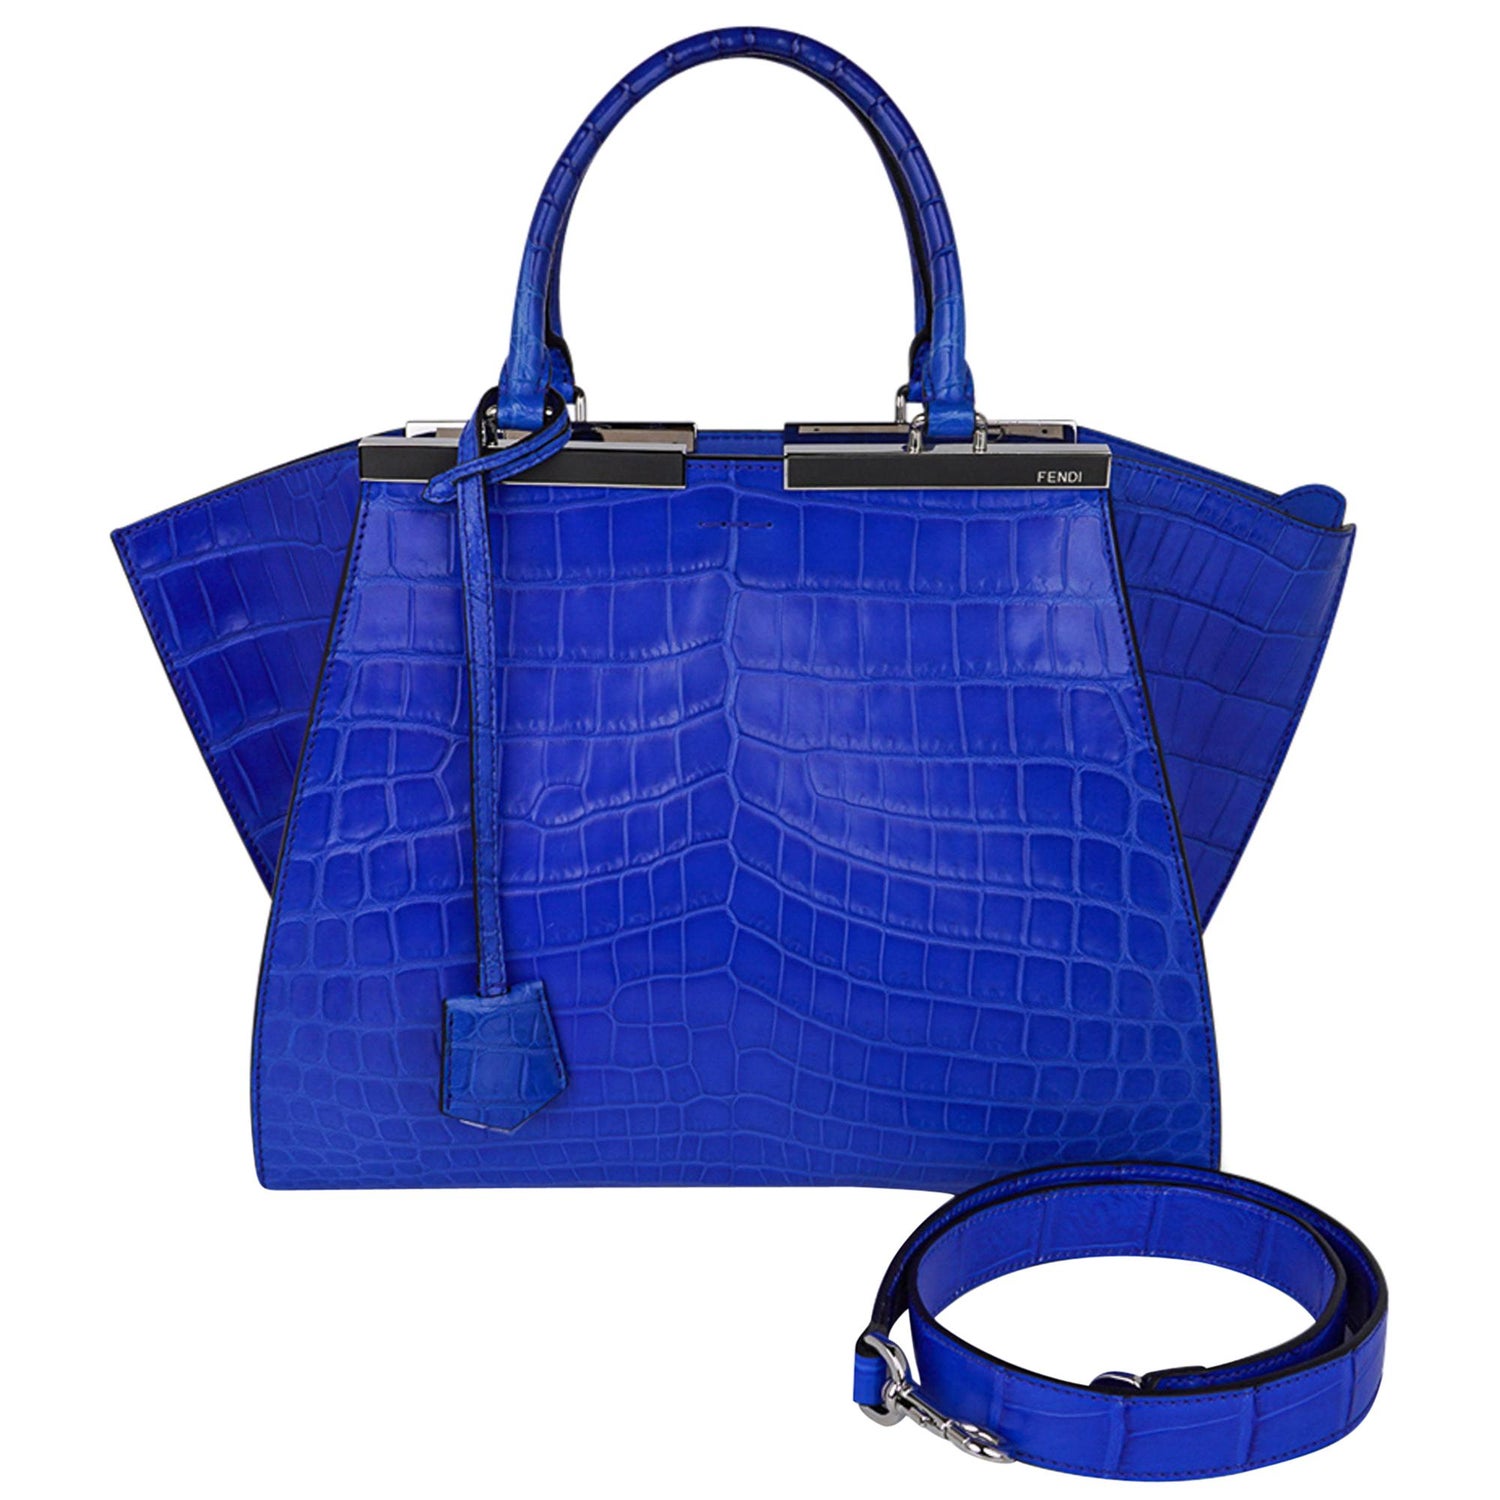 Hermès Kelly 32 Sellier Bleu Electrique Epsom GHW For Sale at 1stDibs